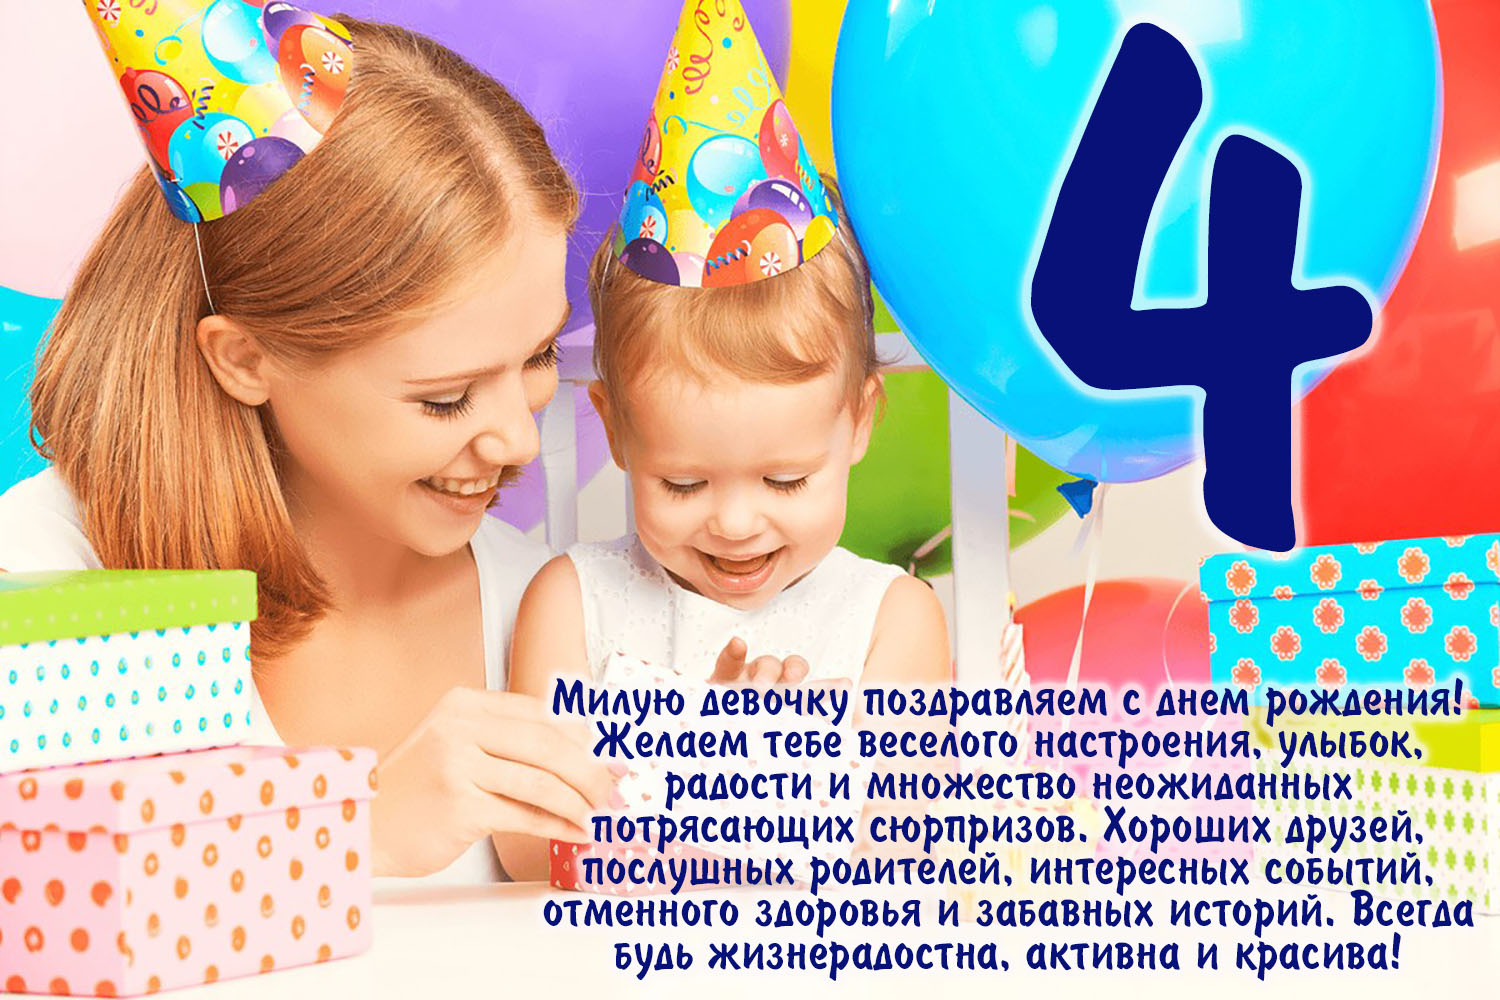 Картинка поздравление с днем рождения 4 года. С днем рождения девочк4 года. С днём рождения дныочке 4 года. С днём рождения 4 года девочке. Поздравление с 4 летием девочке.